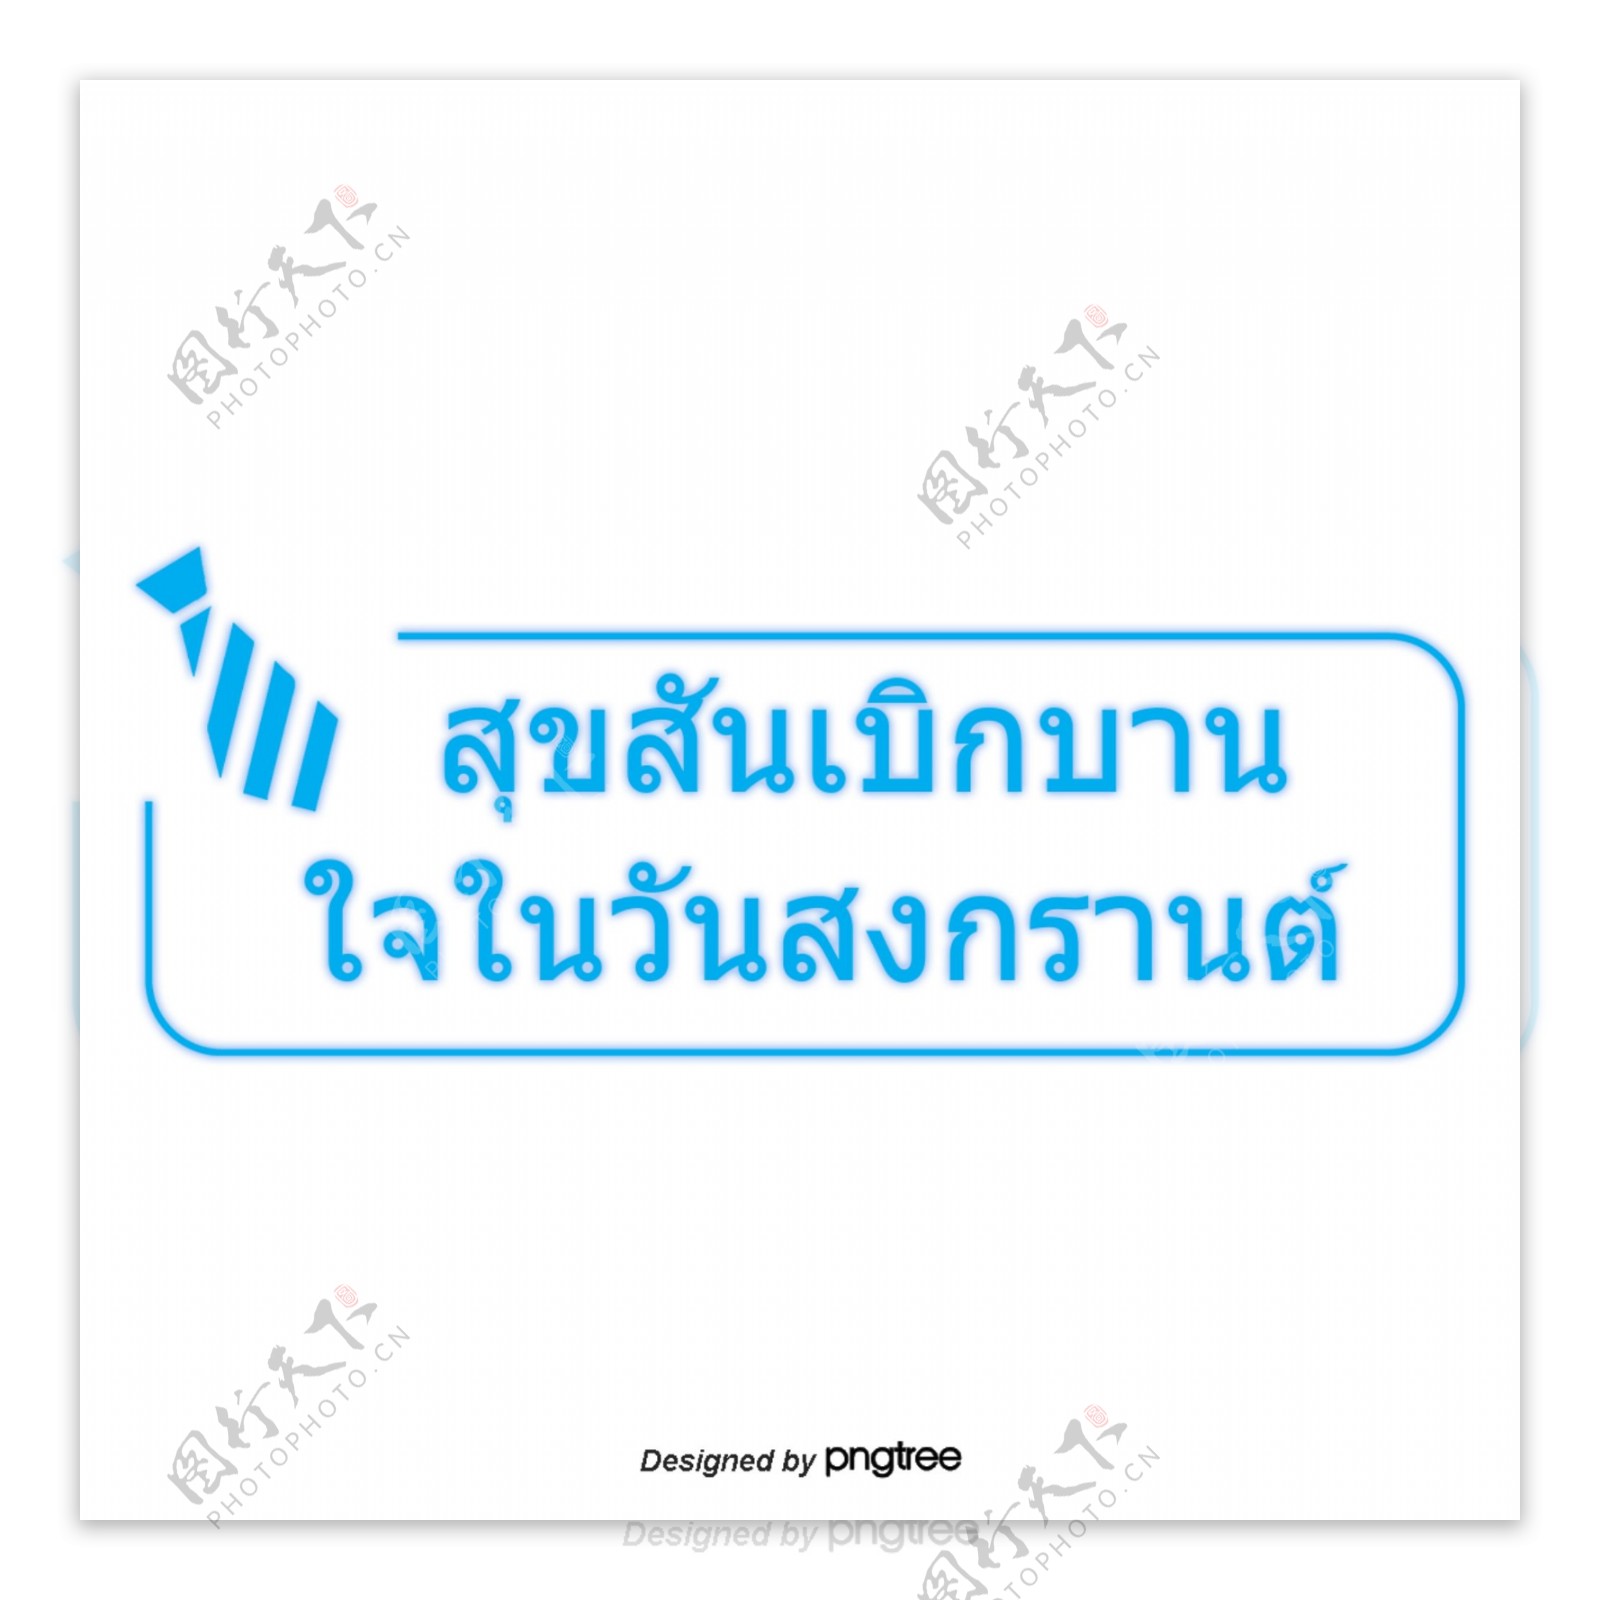 蓝色字体字体书泰国泼水节快乐欢乐广场